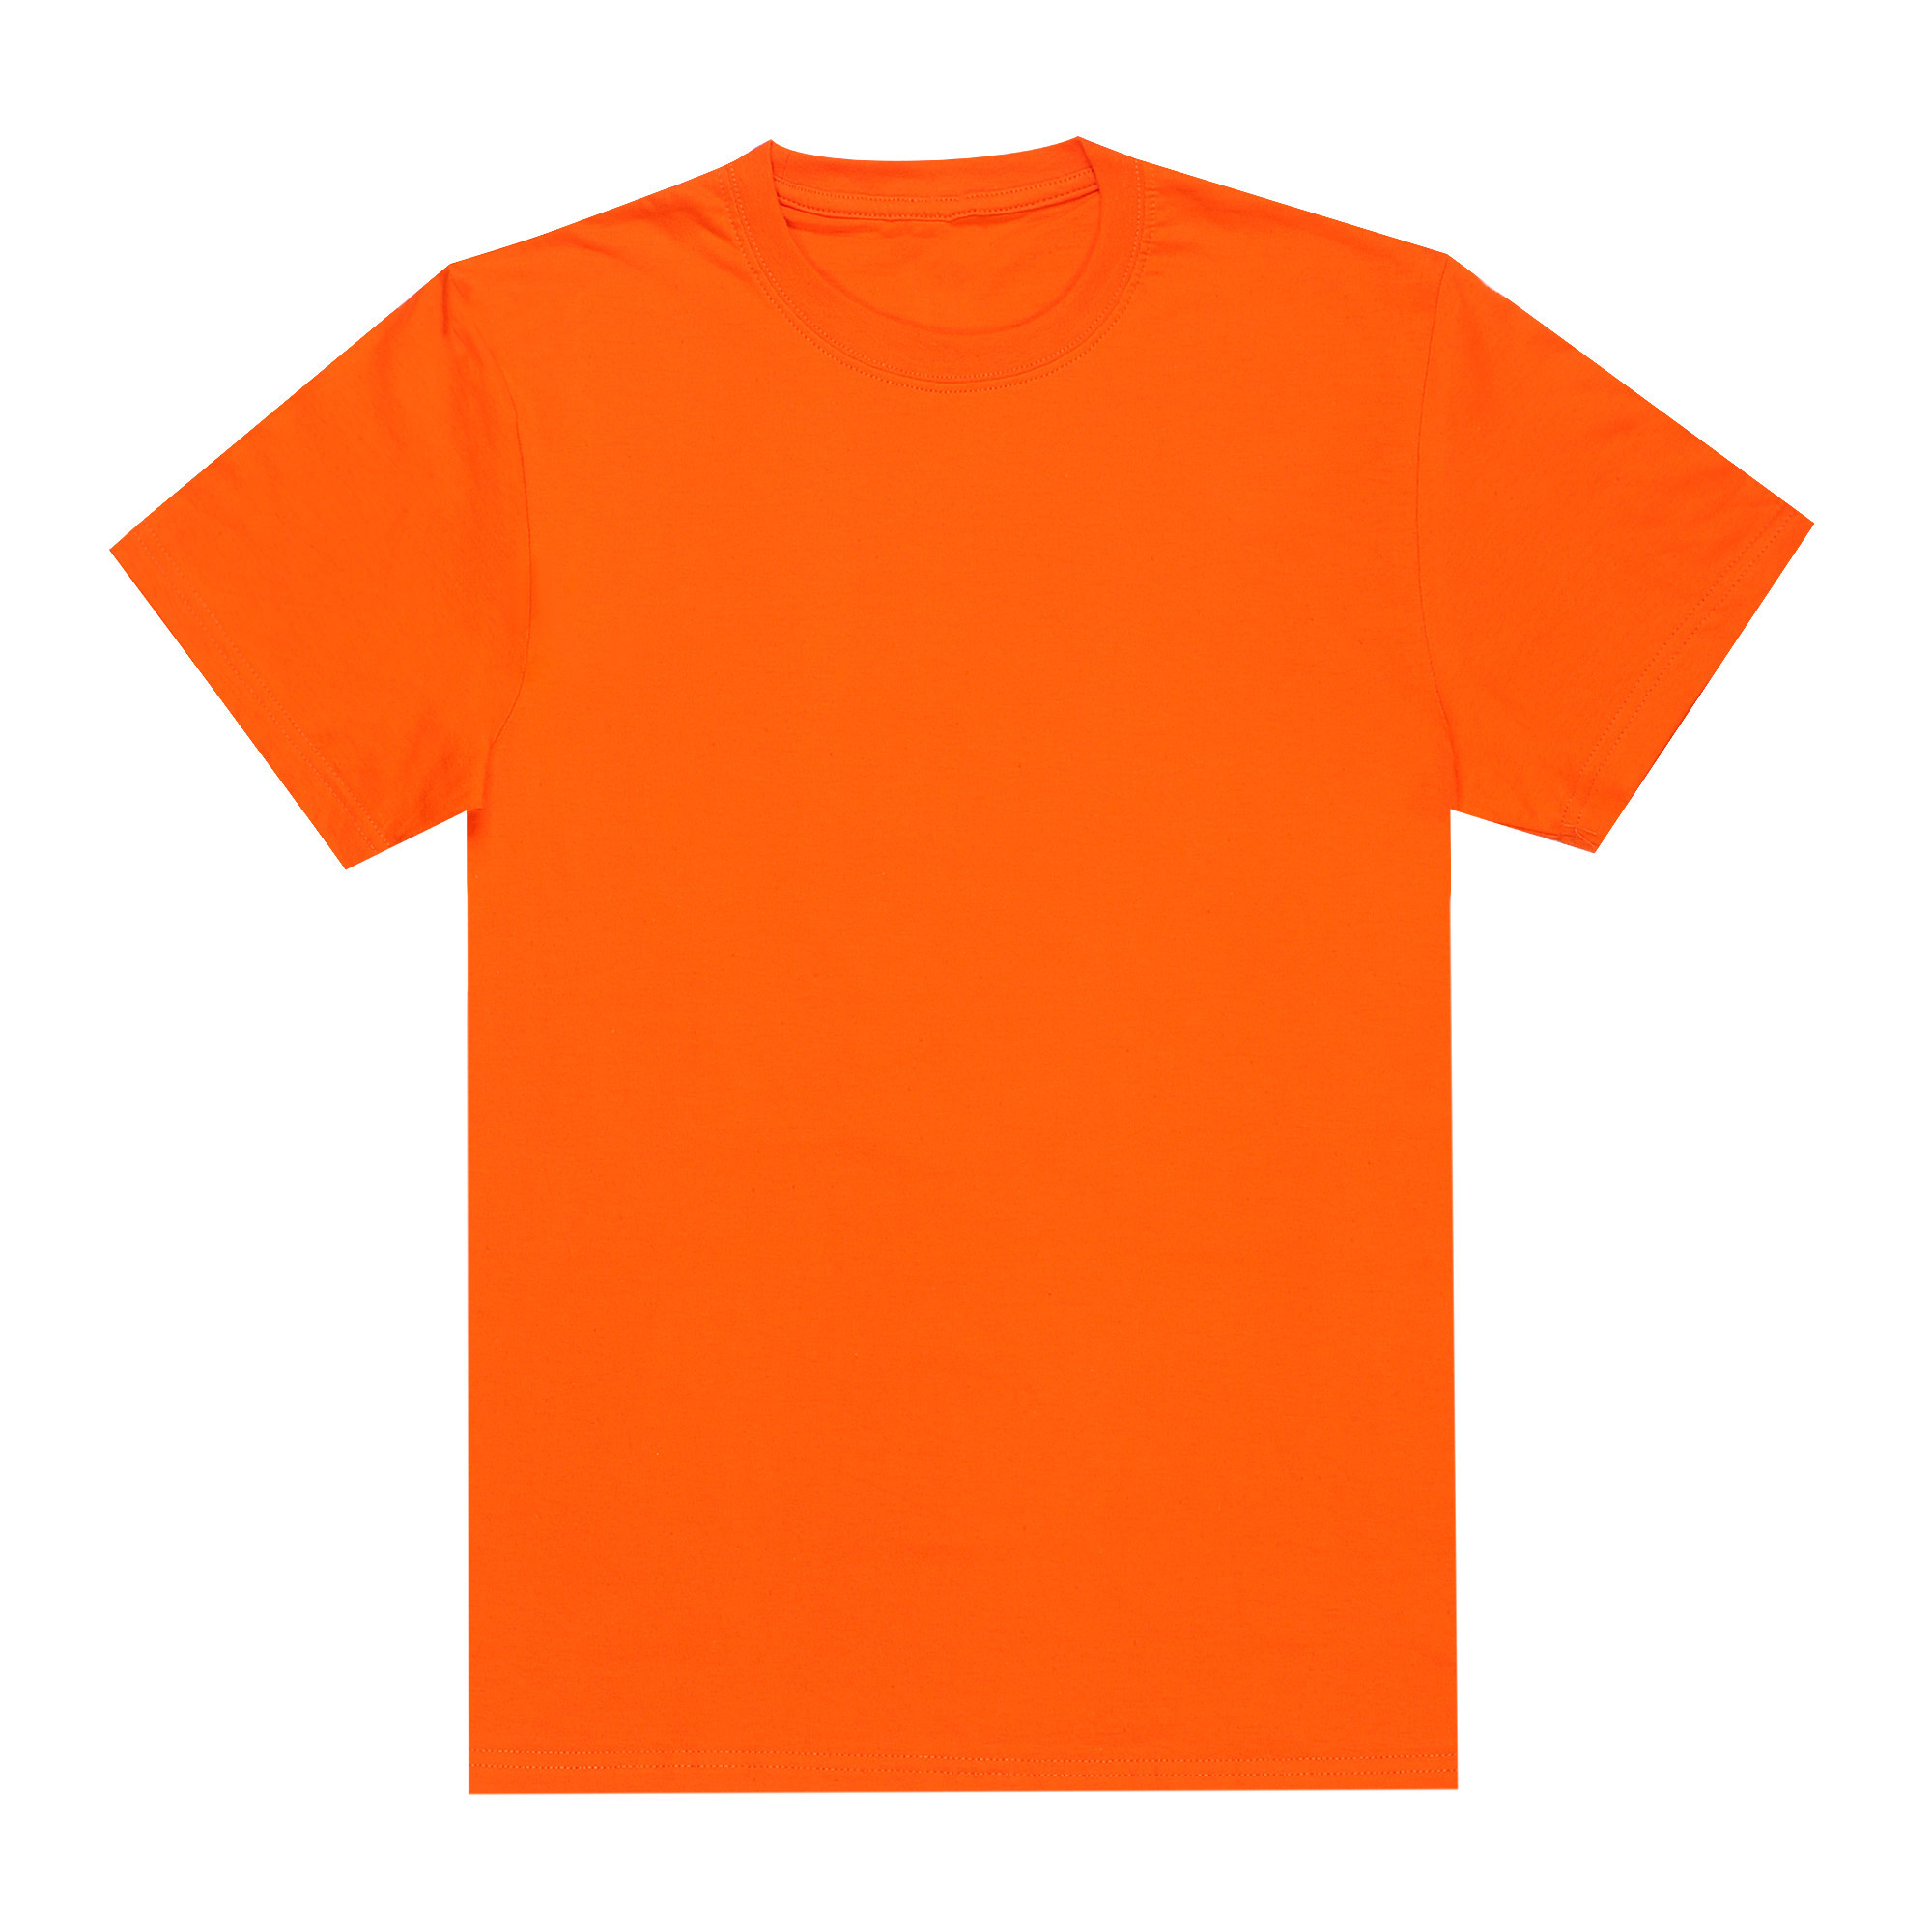 Футболка мужская M-1 Promo оранжевая с коротким рукавом XL, цвет оранжевый, размер XL - фото 1